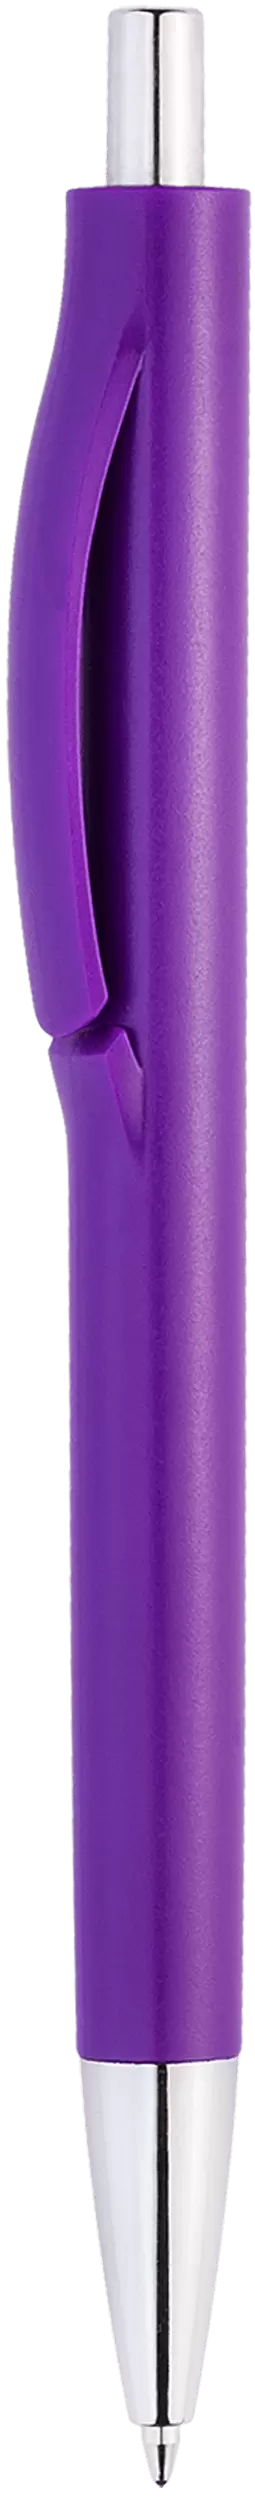 Ручка IGLA CHROME Фиолетовая 1032-11